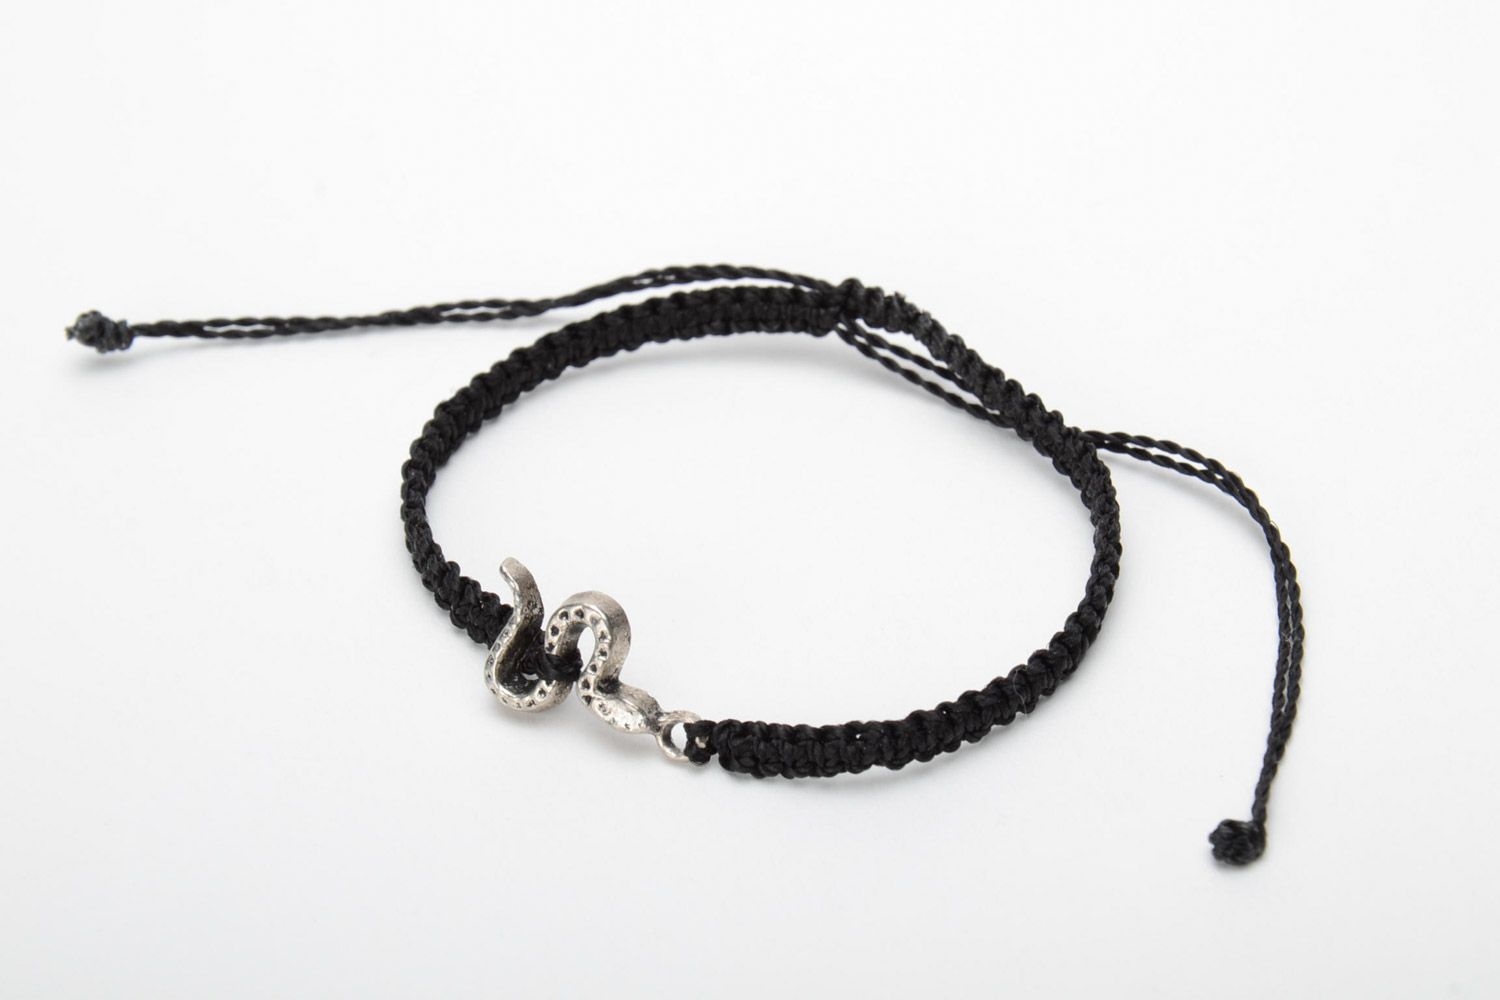 Handmade black macrame woven bracelet with metal snake charm for women photo 3